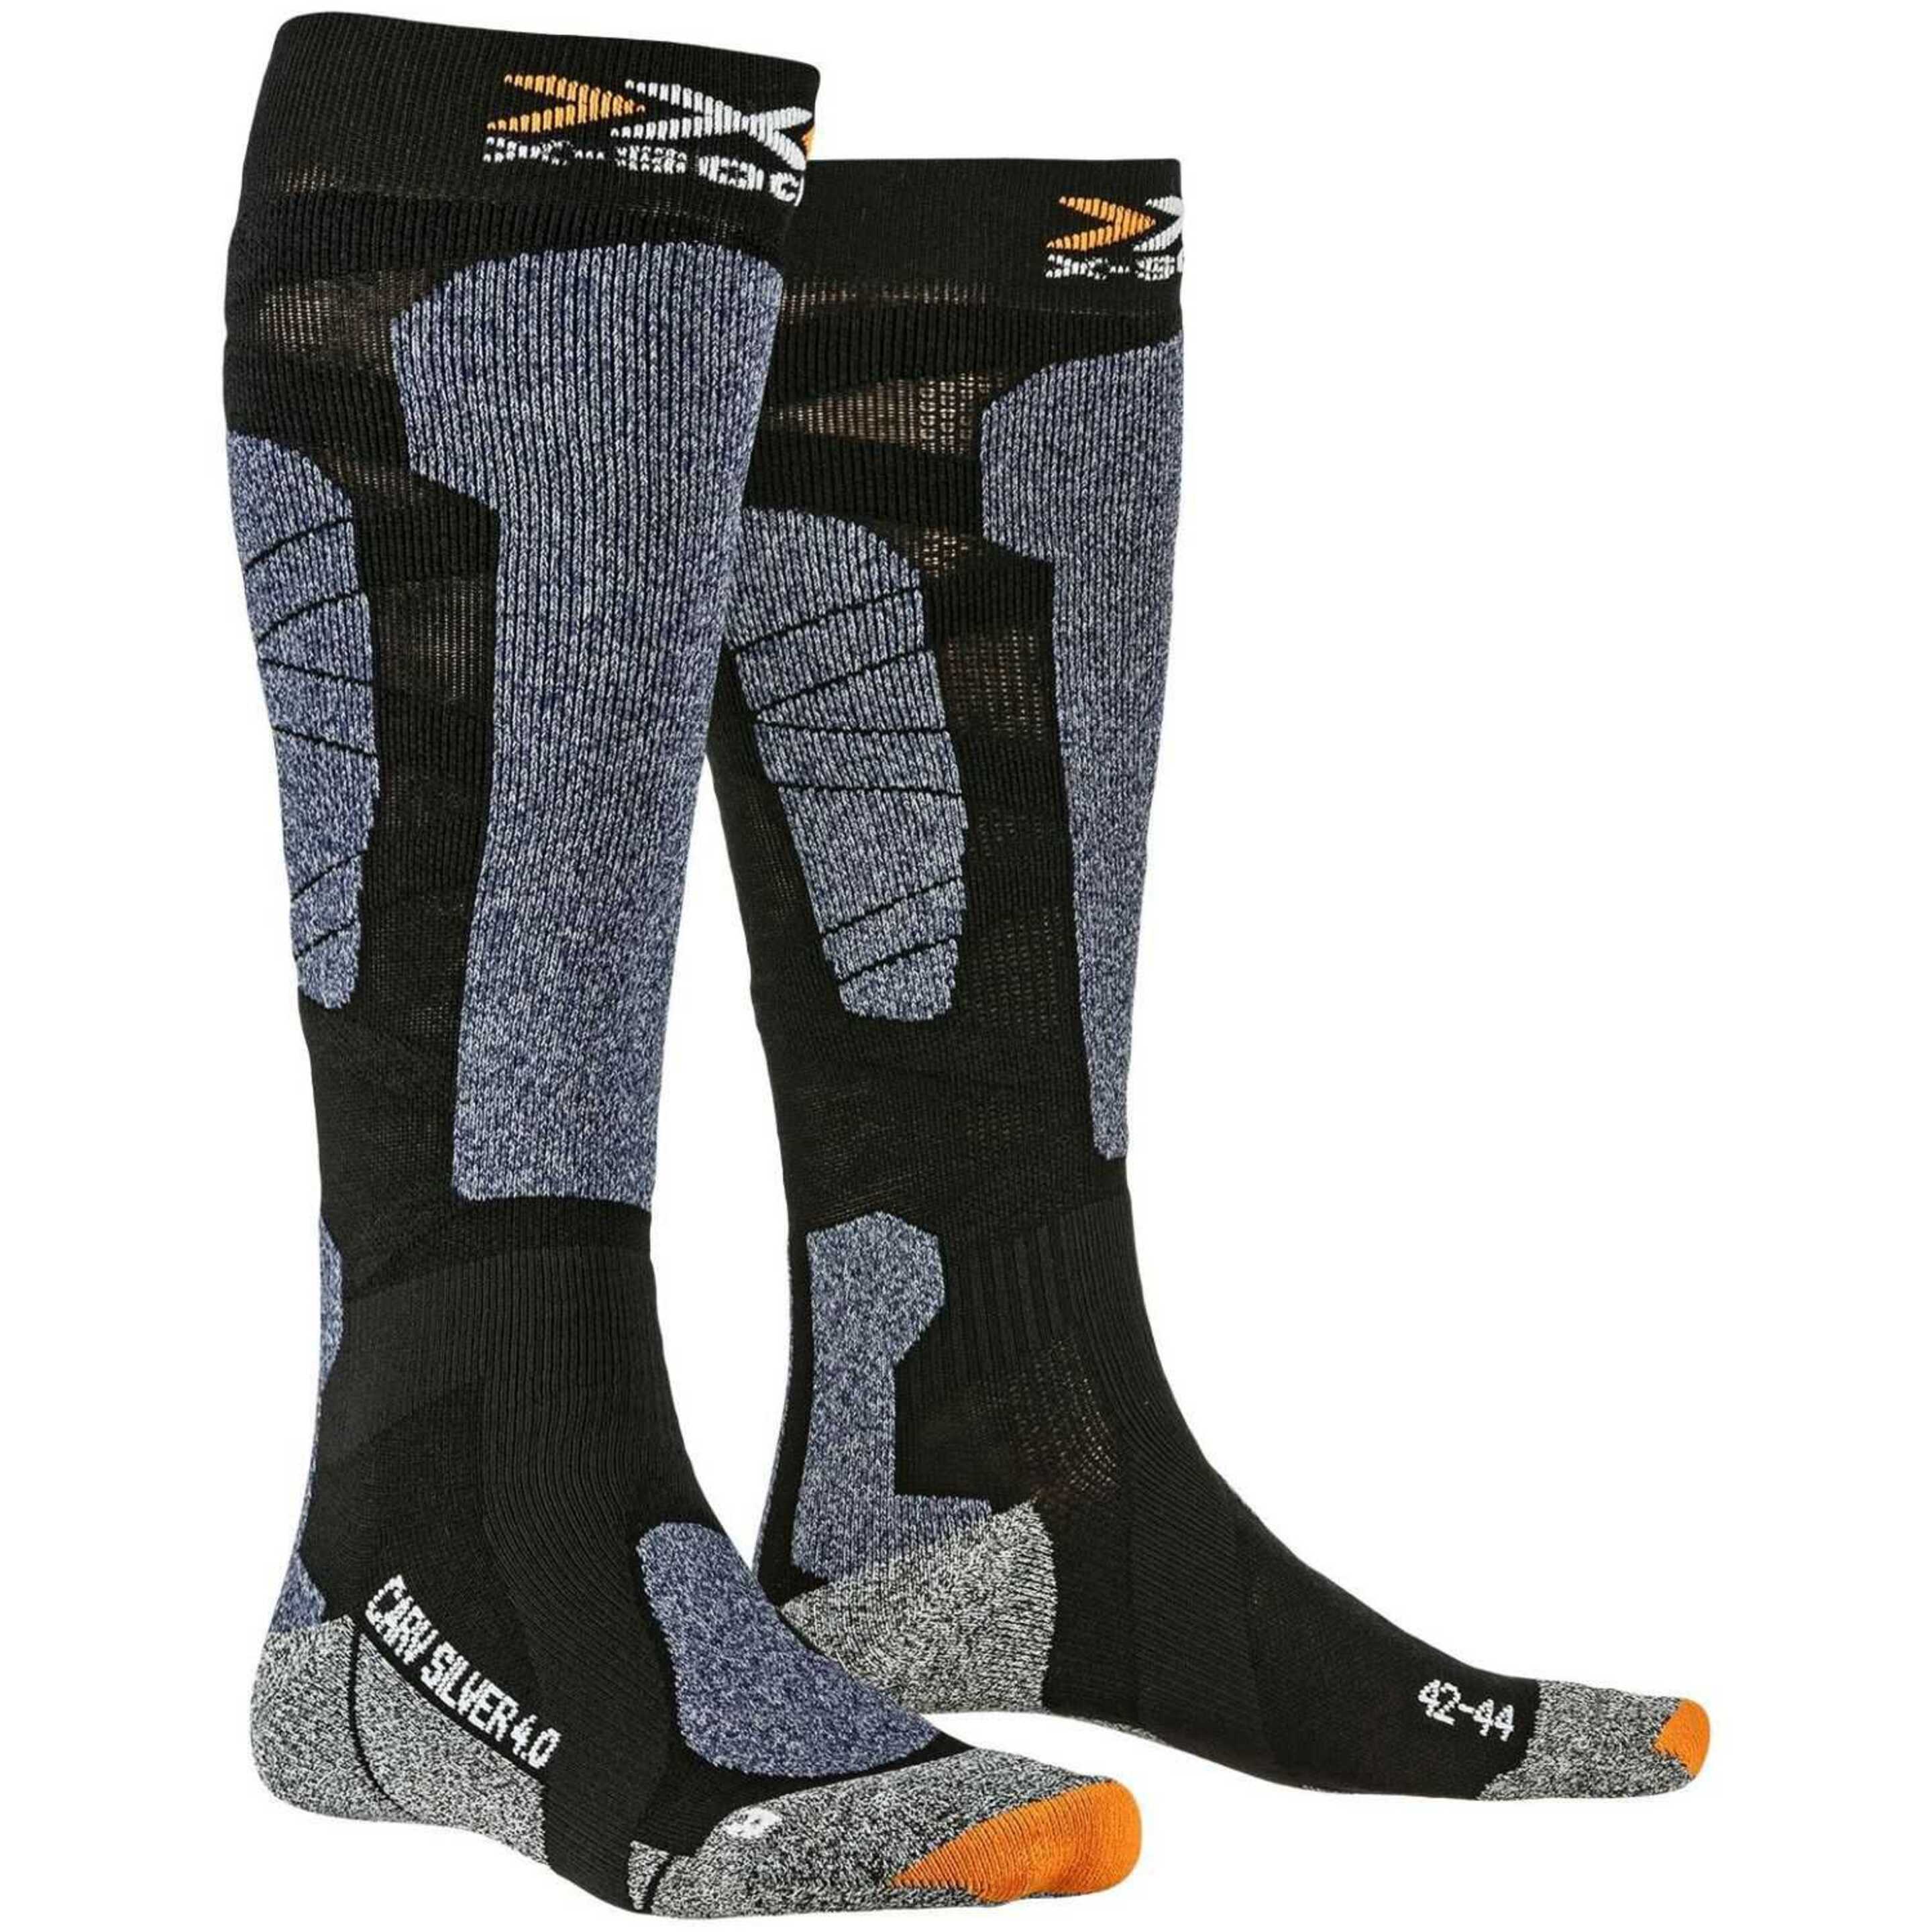 Calcetin Ski Carve Silver 4.0  X-socks - Negro  MKP